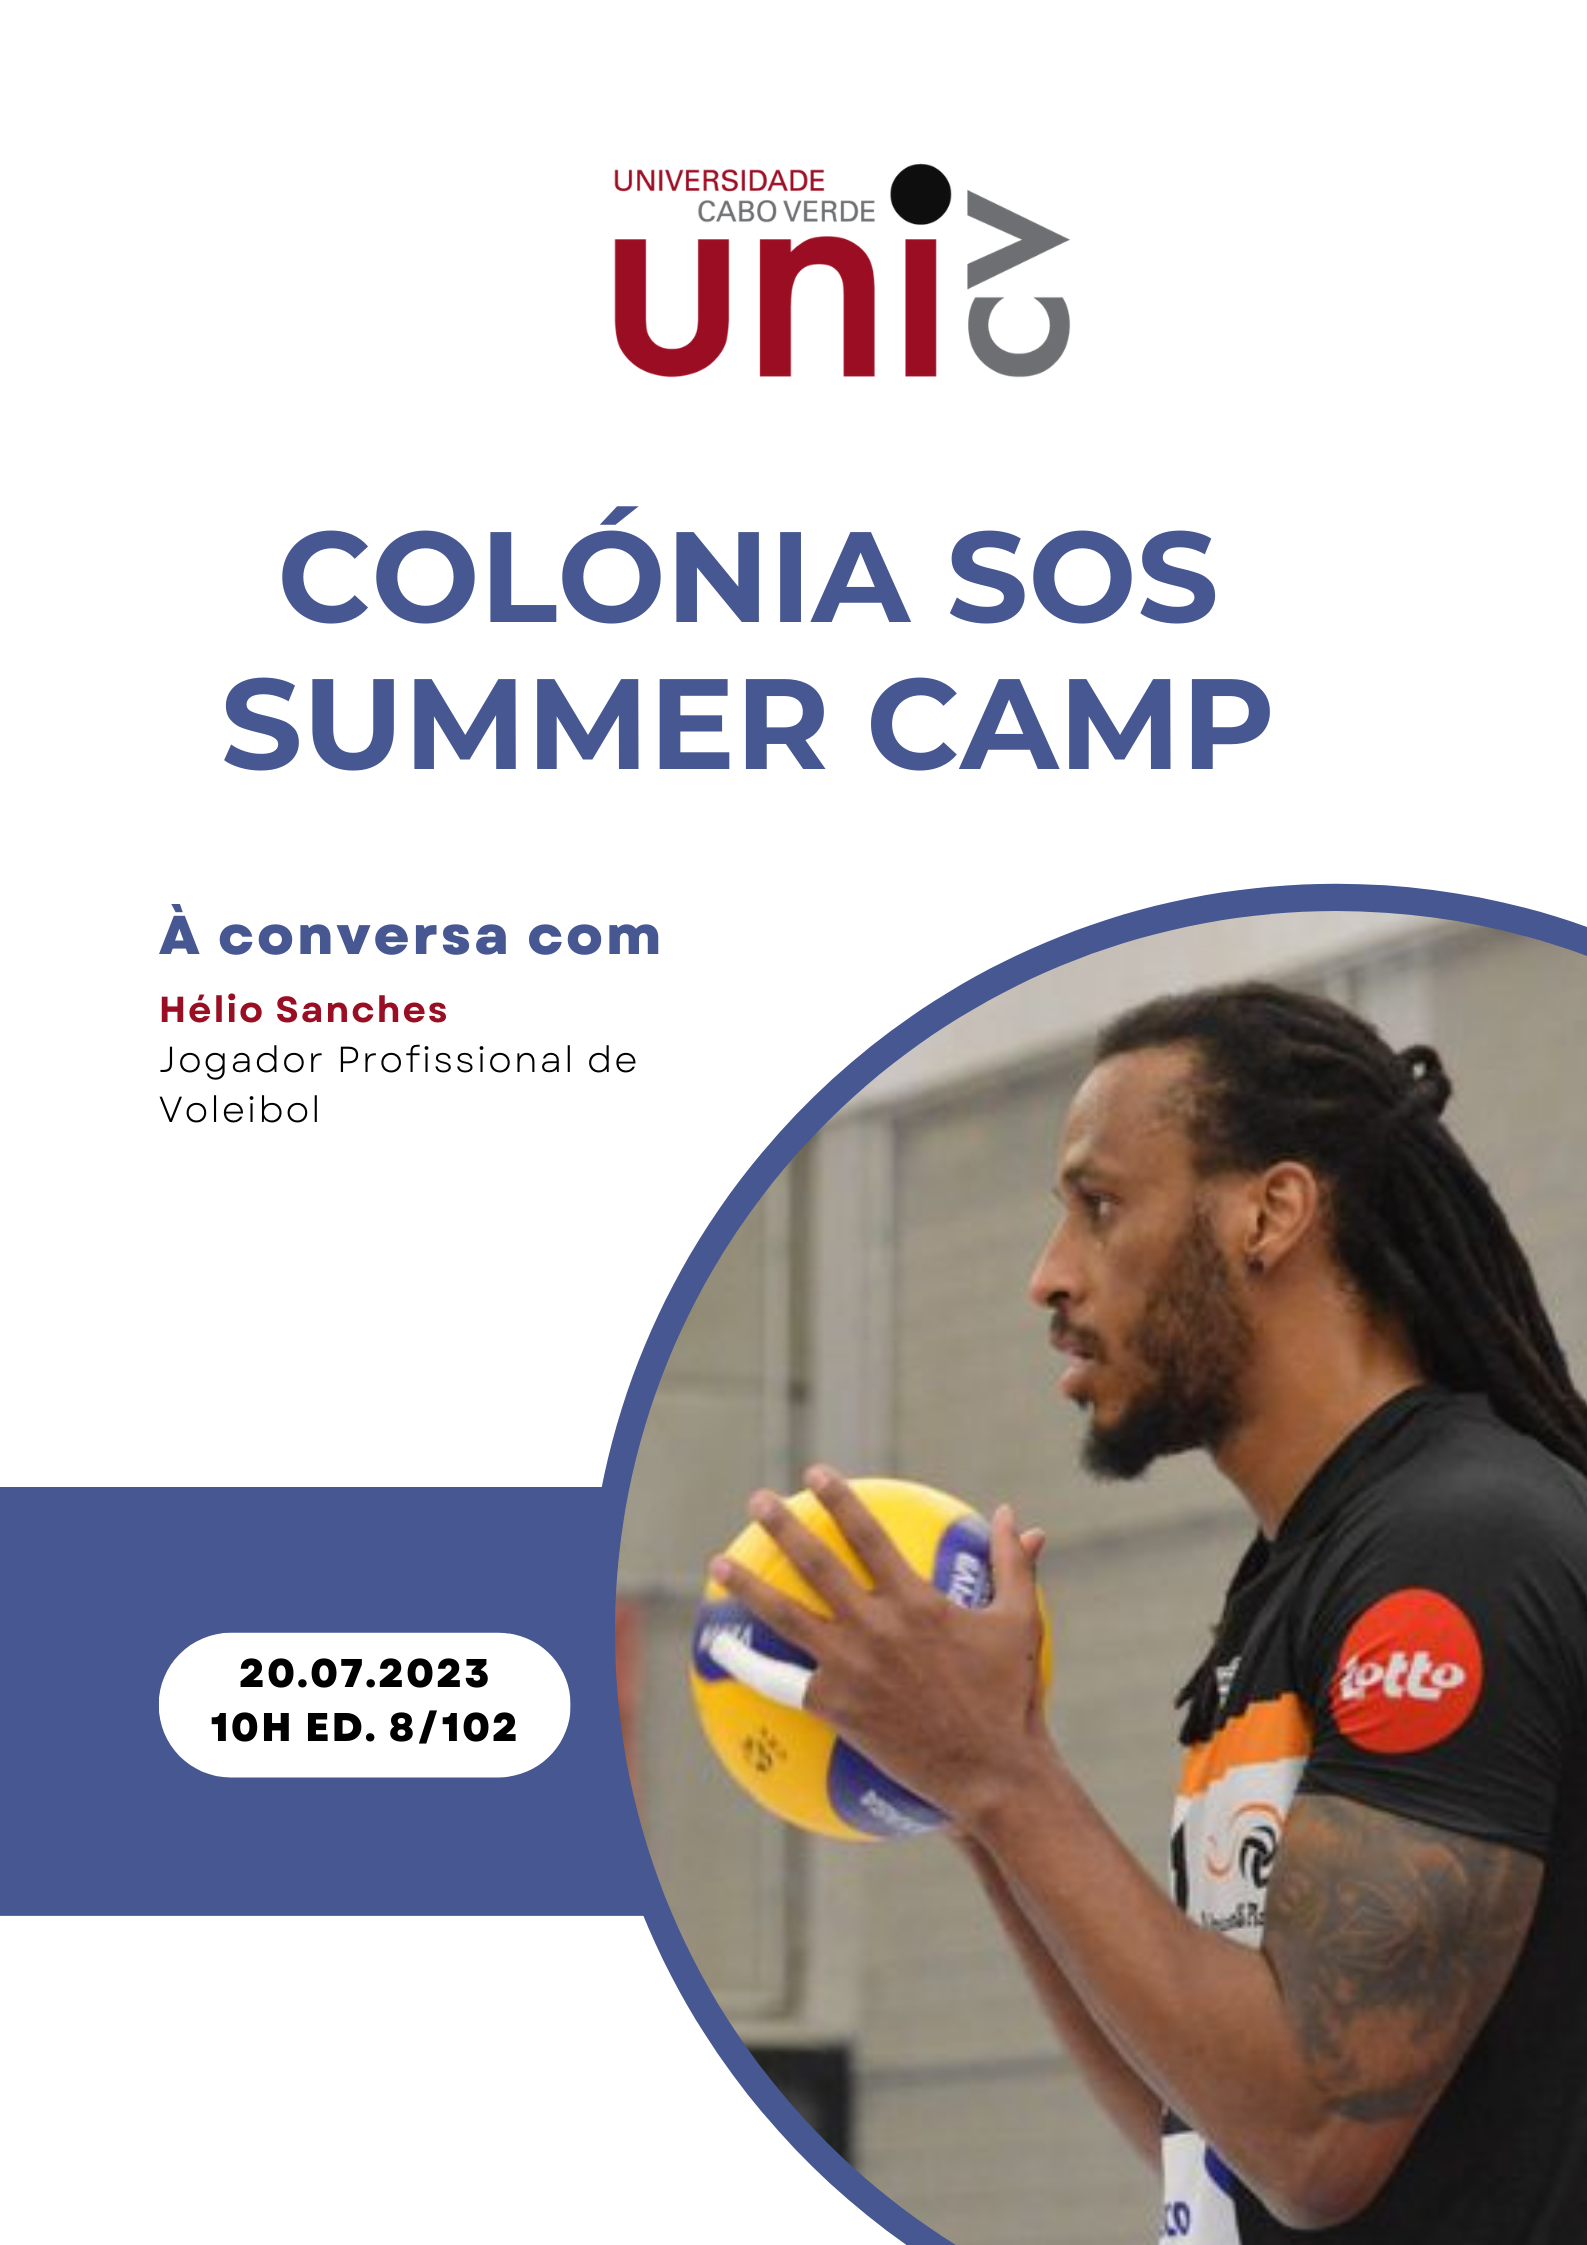 Colonia SOS Summer Camp